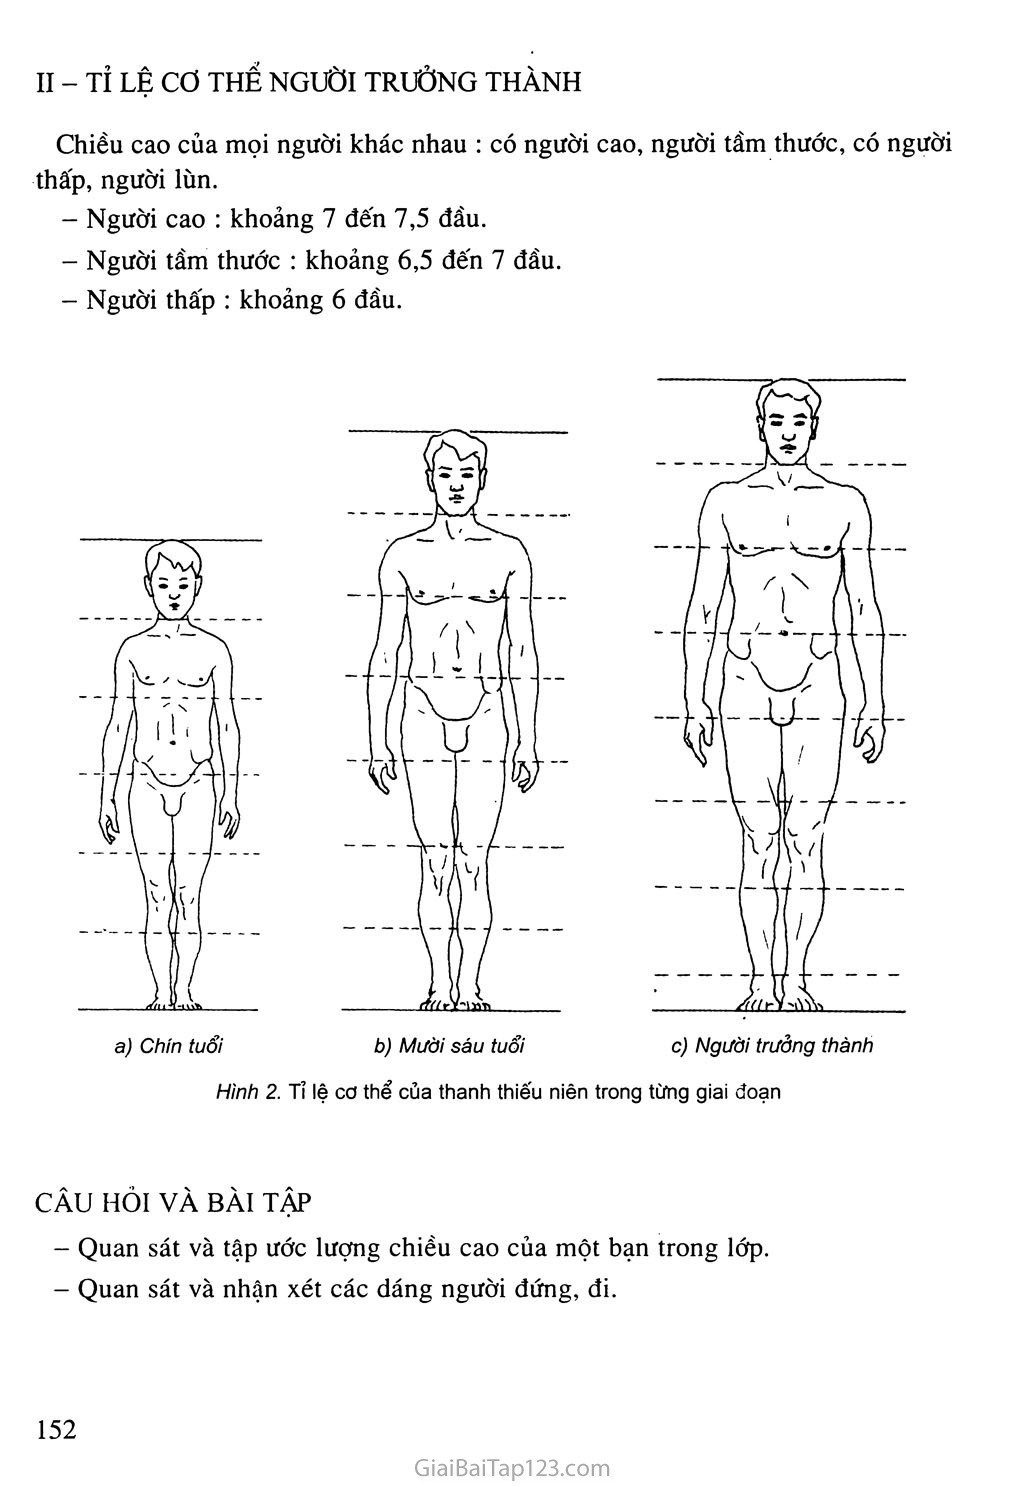 SGK Âm Nhạc và Mĩ Thuật 8 - Bài 26. Vẽ theo mẫu - Giới thiệu tỉ lệ cơ thể  người